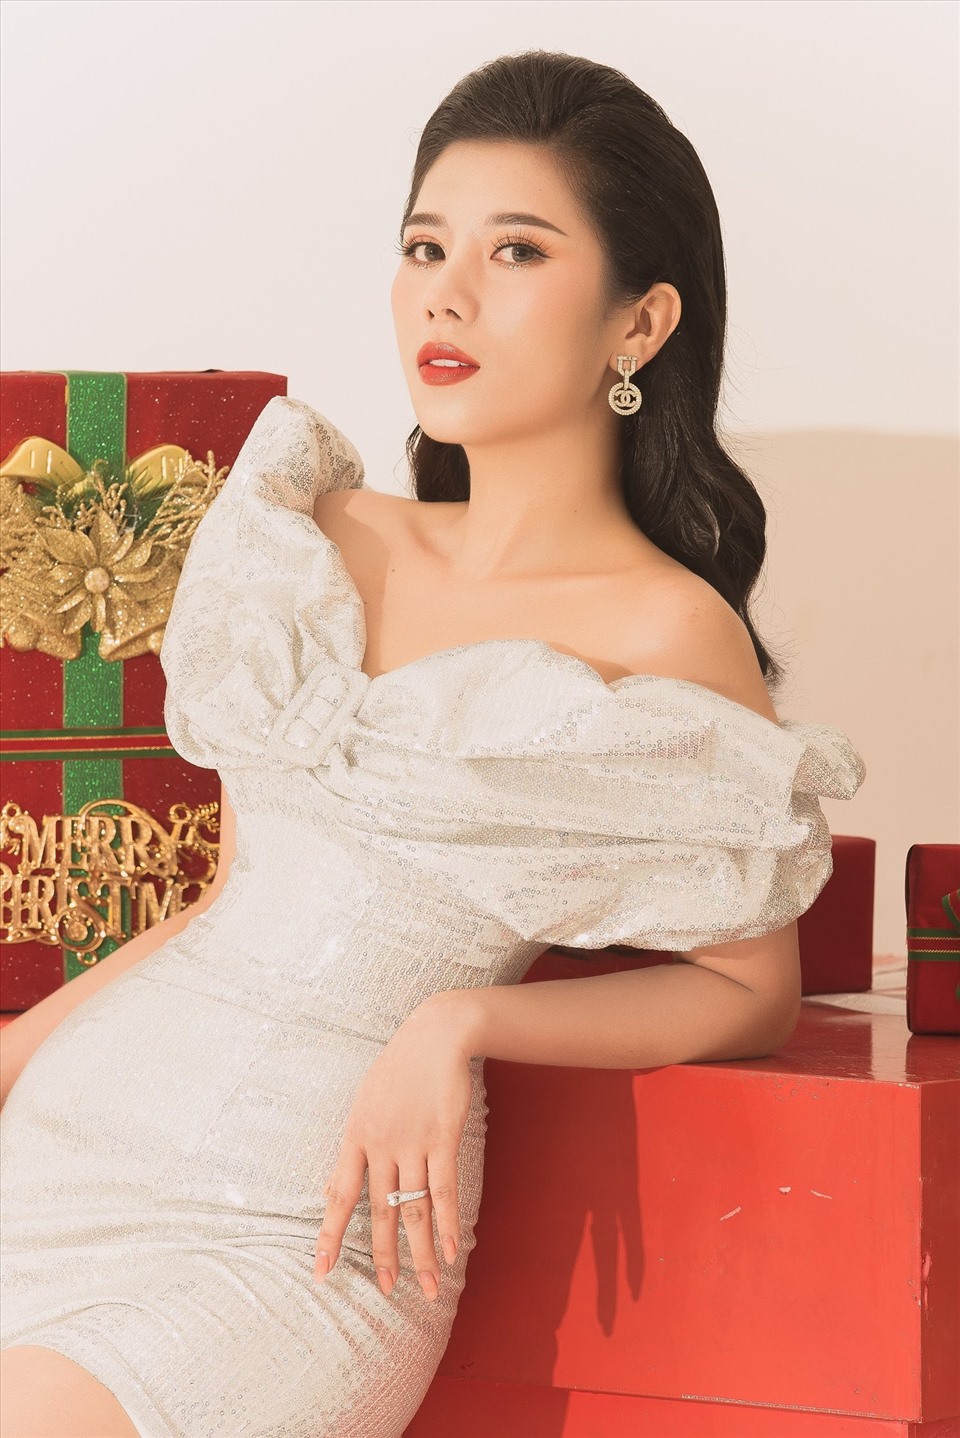 Trước thềm bước sang năm mới, Hoa hậu Dương Yến Nhung cũng tiết lộ thêm về những kế hoạch của năm 2021.